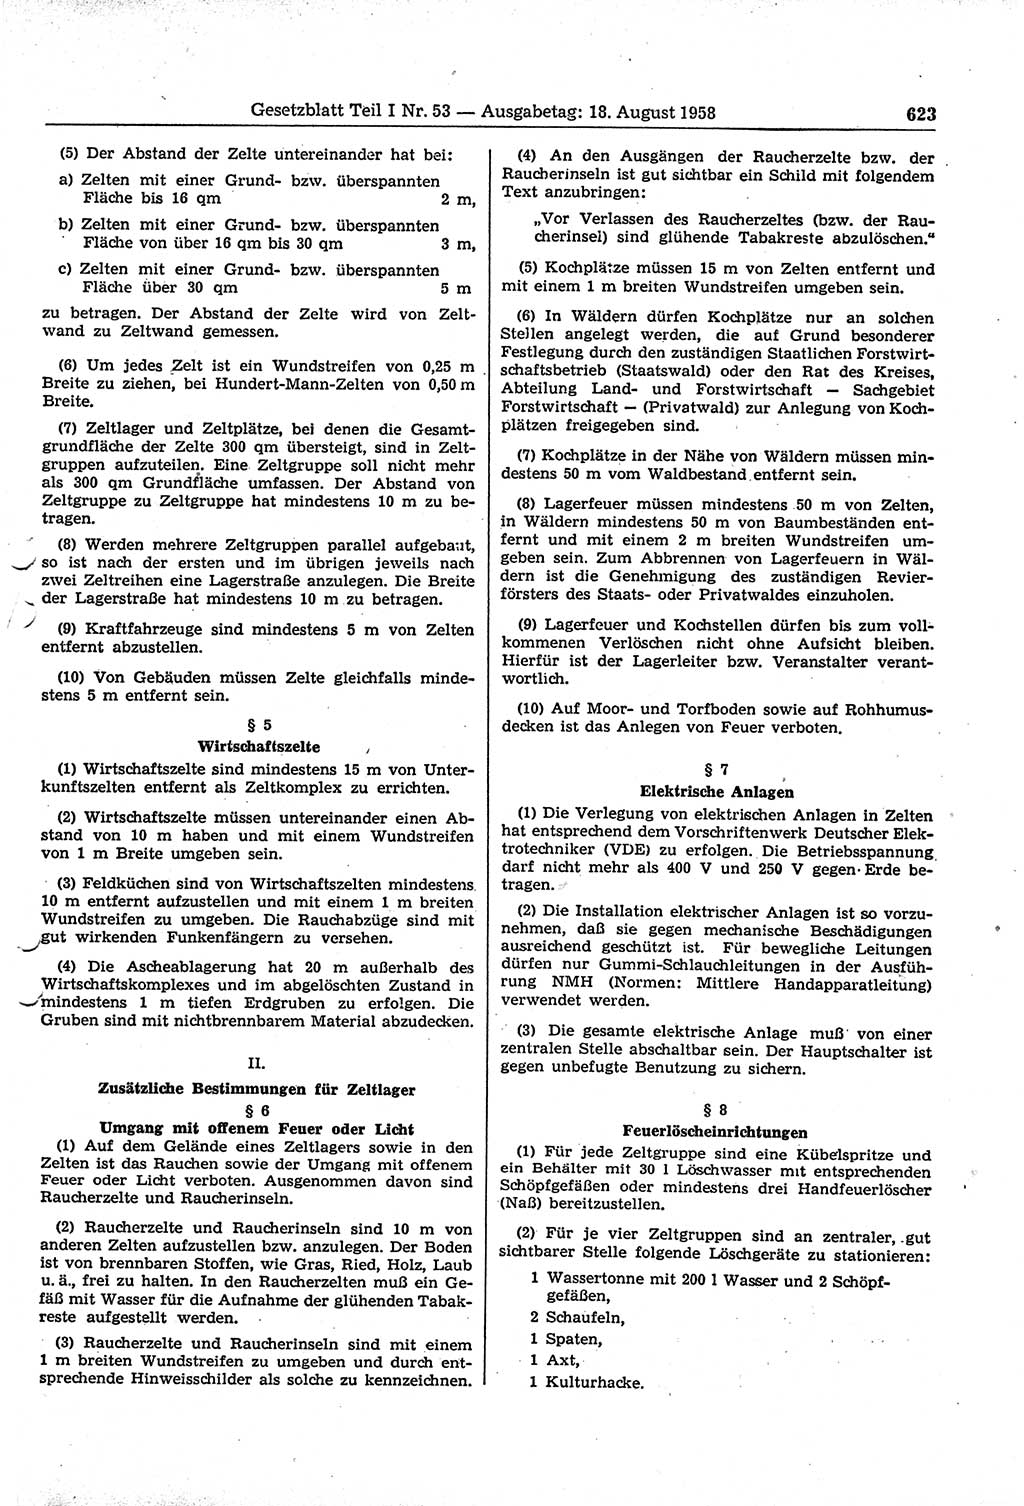 Gesetzblatt (GBl.) der Deutschen Demokratischen Republik (DDR) Teil Ⅰ 1958, Seite 623 (GBl. DDR Ⅰ 1958, S. 623)